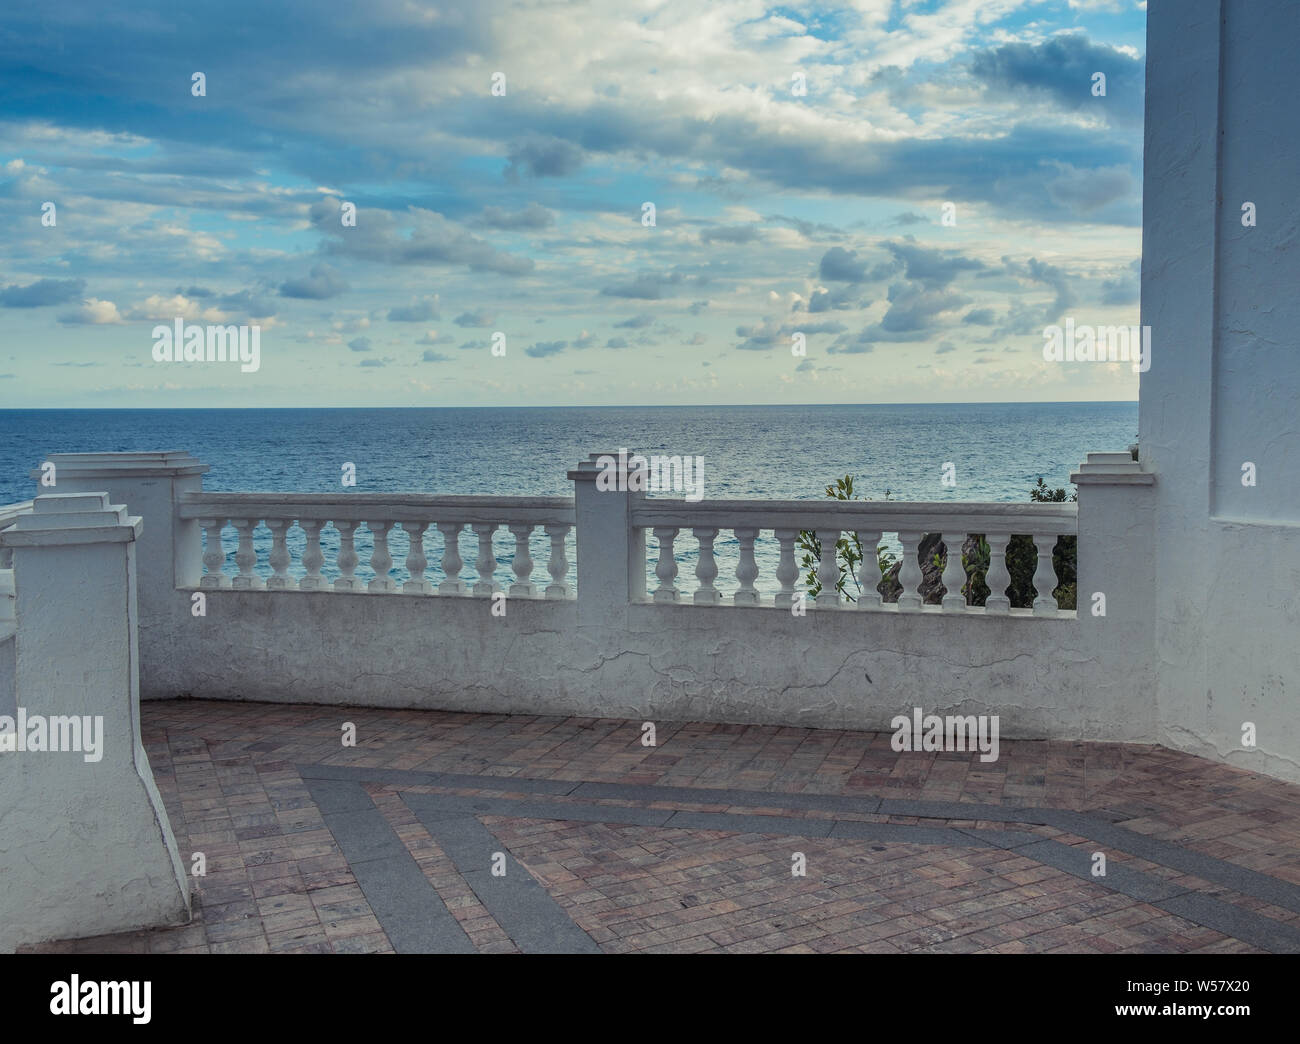 Nerja, Malaga, Spanien - 20. März 2019: Blick auf die weiße Balustrade eines einsamen Terrasse mit Blick auf das Meer und die Wolken im Hintergrund Stockfoto